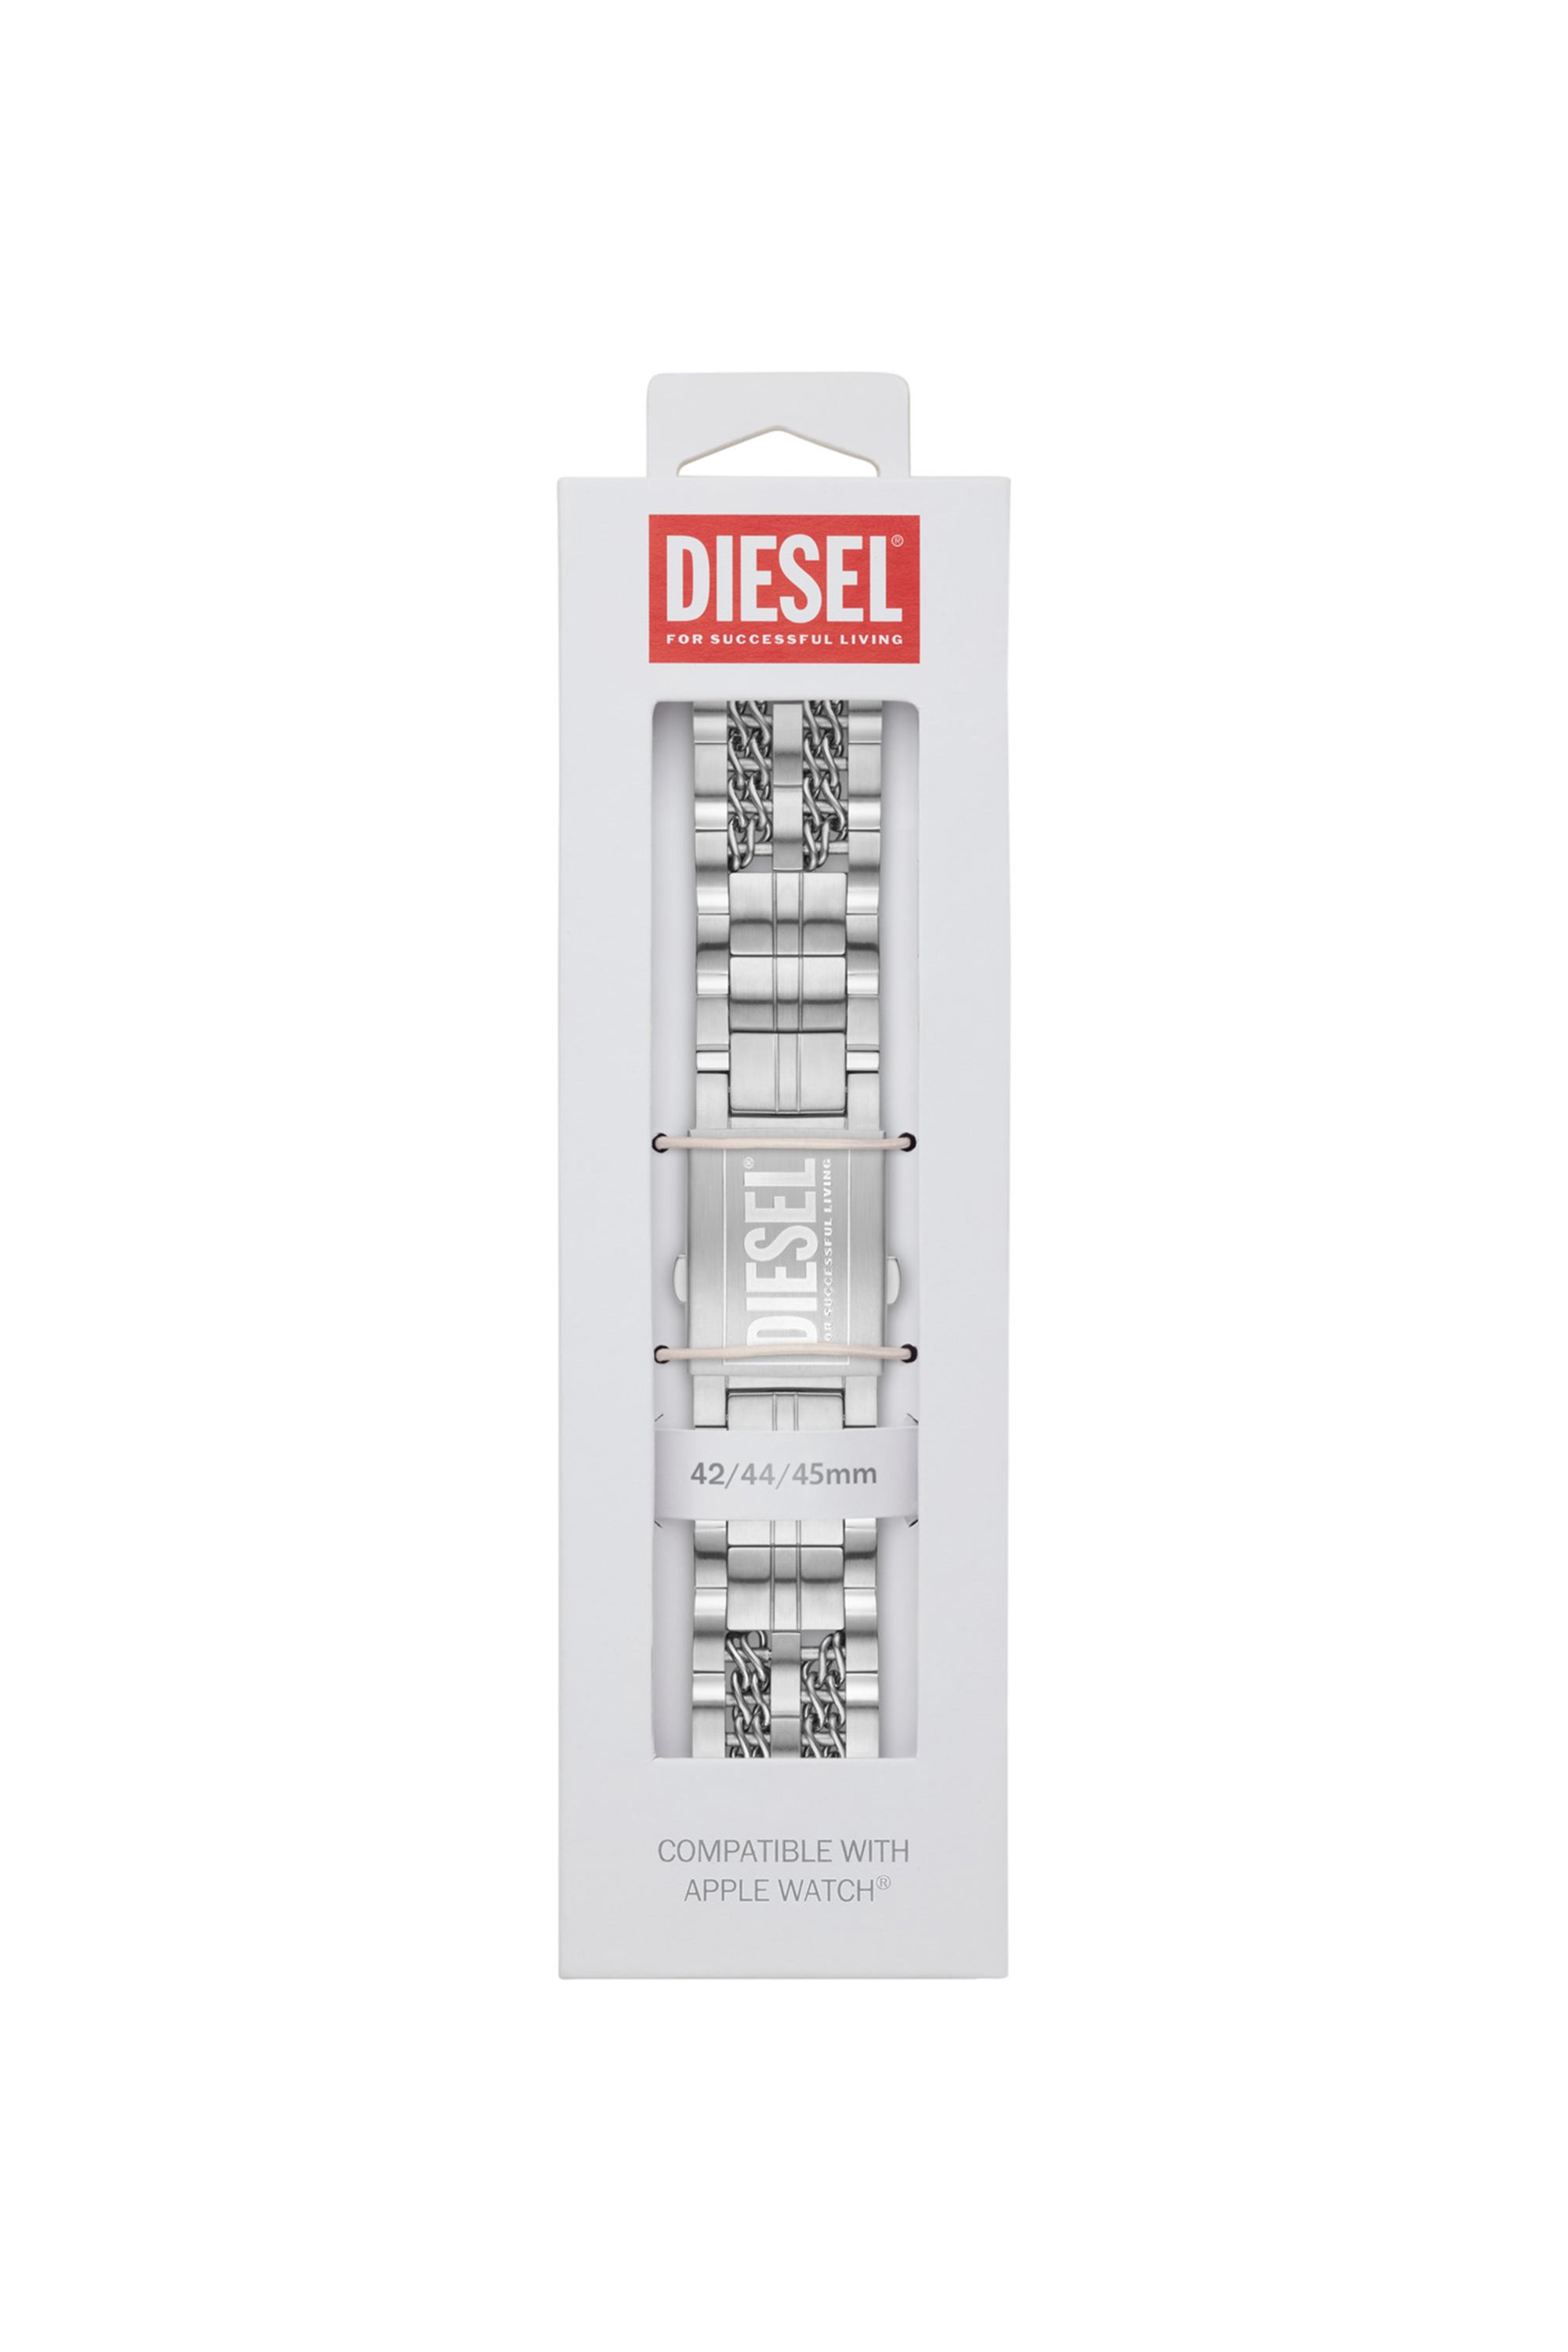 Diesel - DSS008, Gris - Image 2